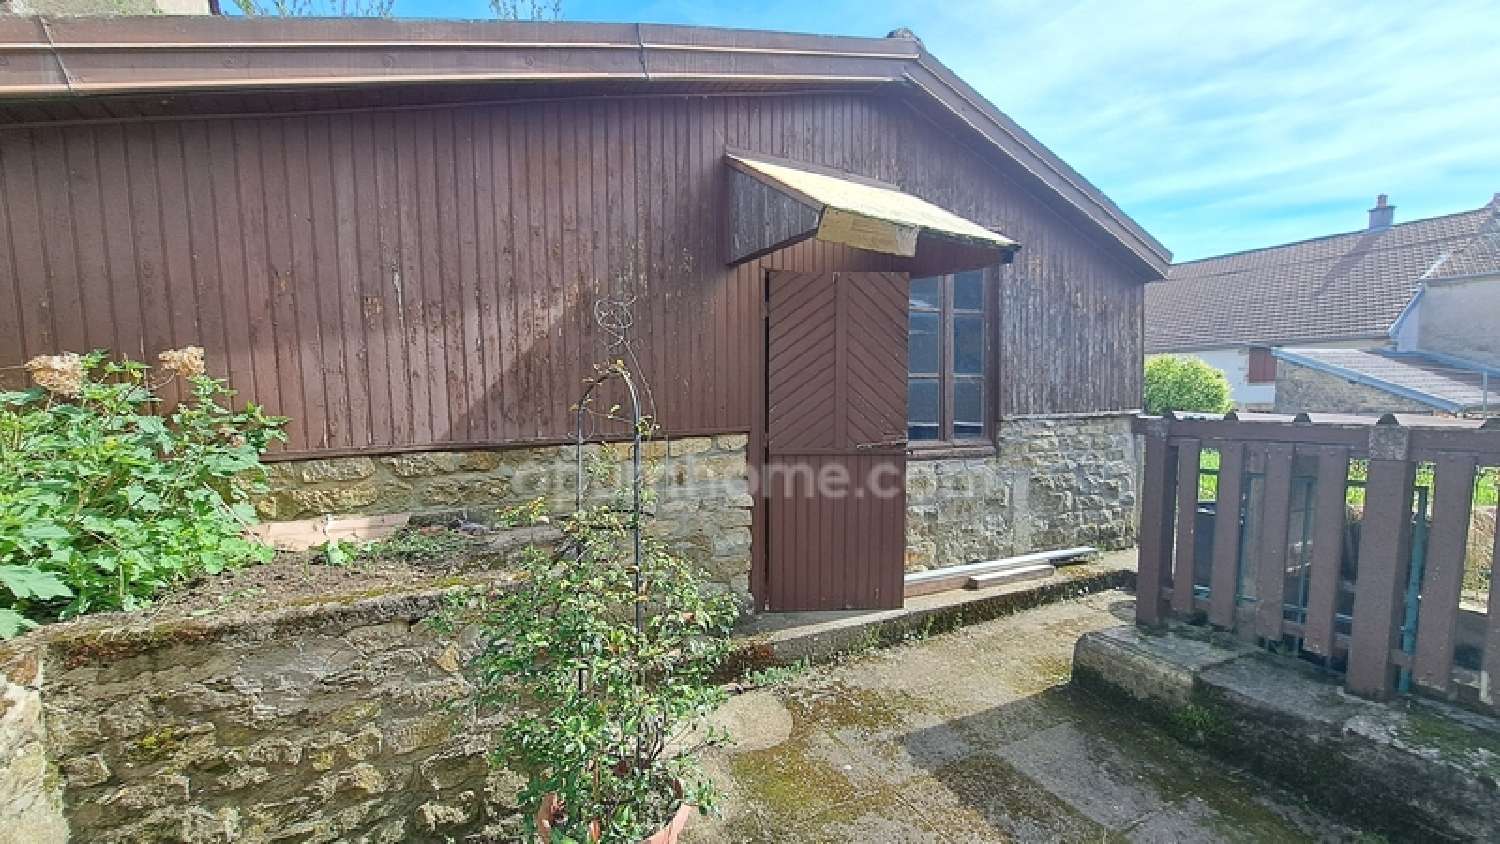  à vendre maison de village Vitrey-sur-Mance Haute-Saône 5